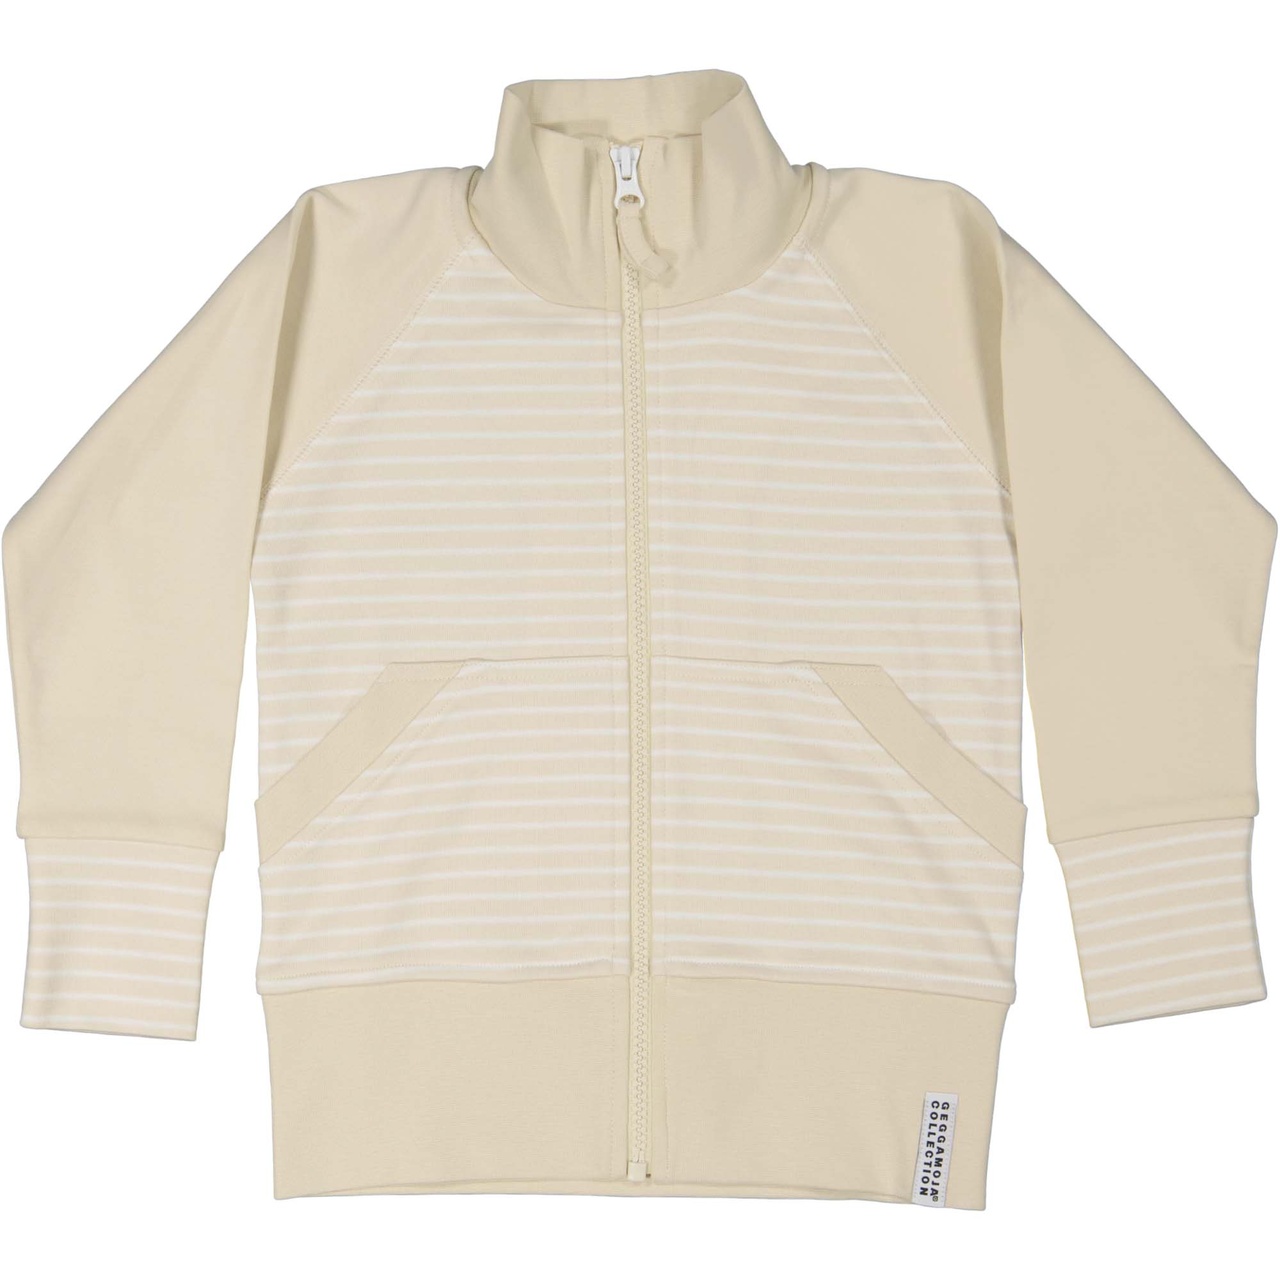 Zip sweater Beige/white 74/80